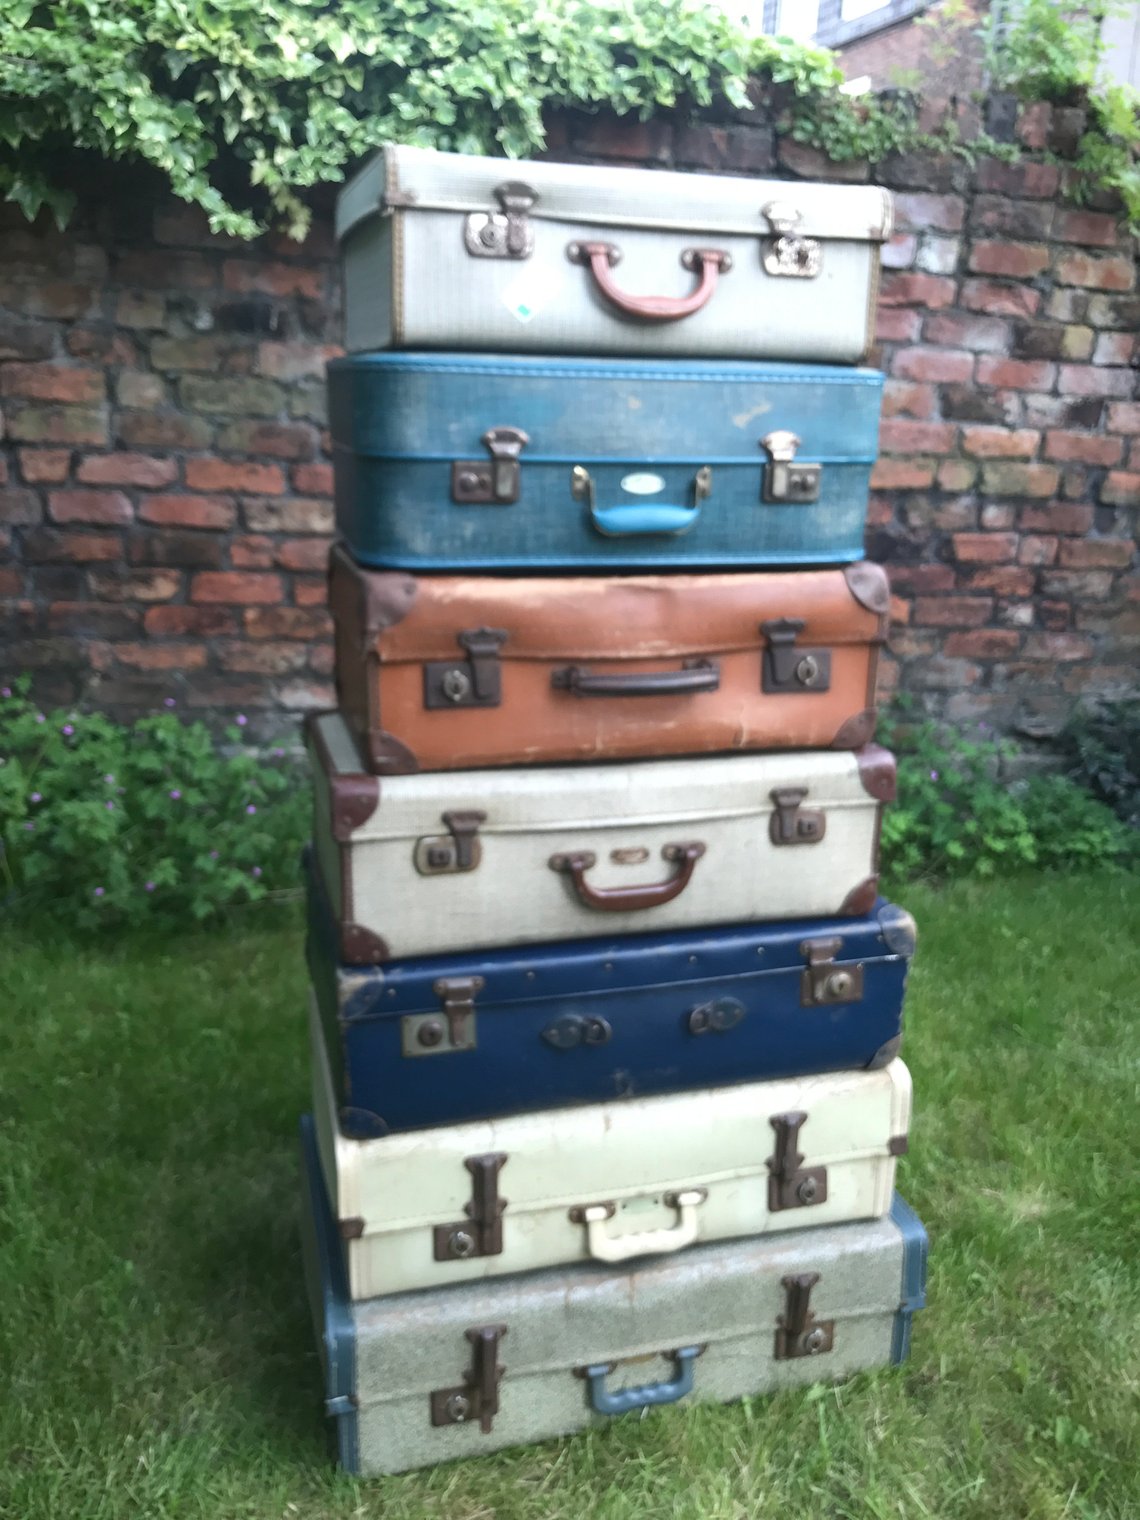 suitcases